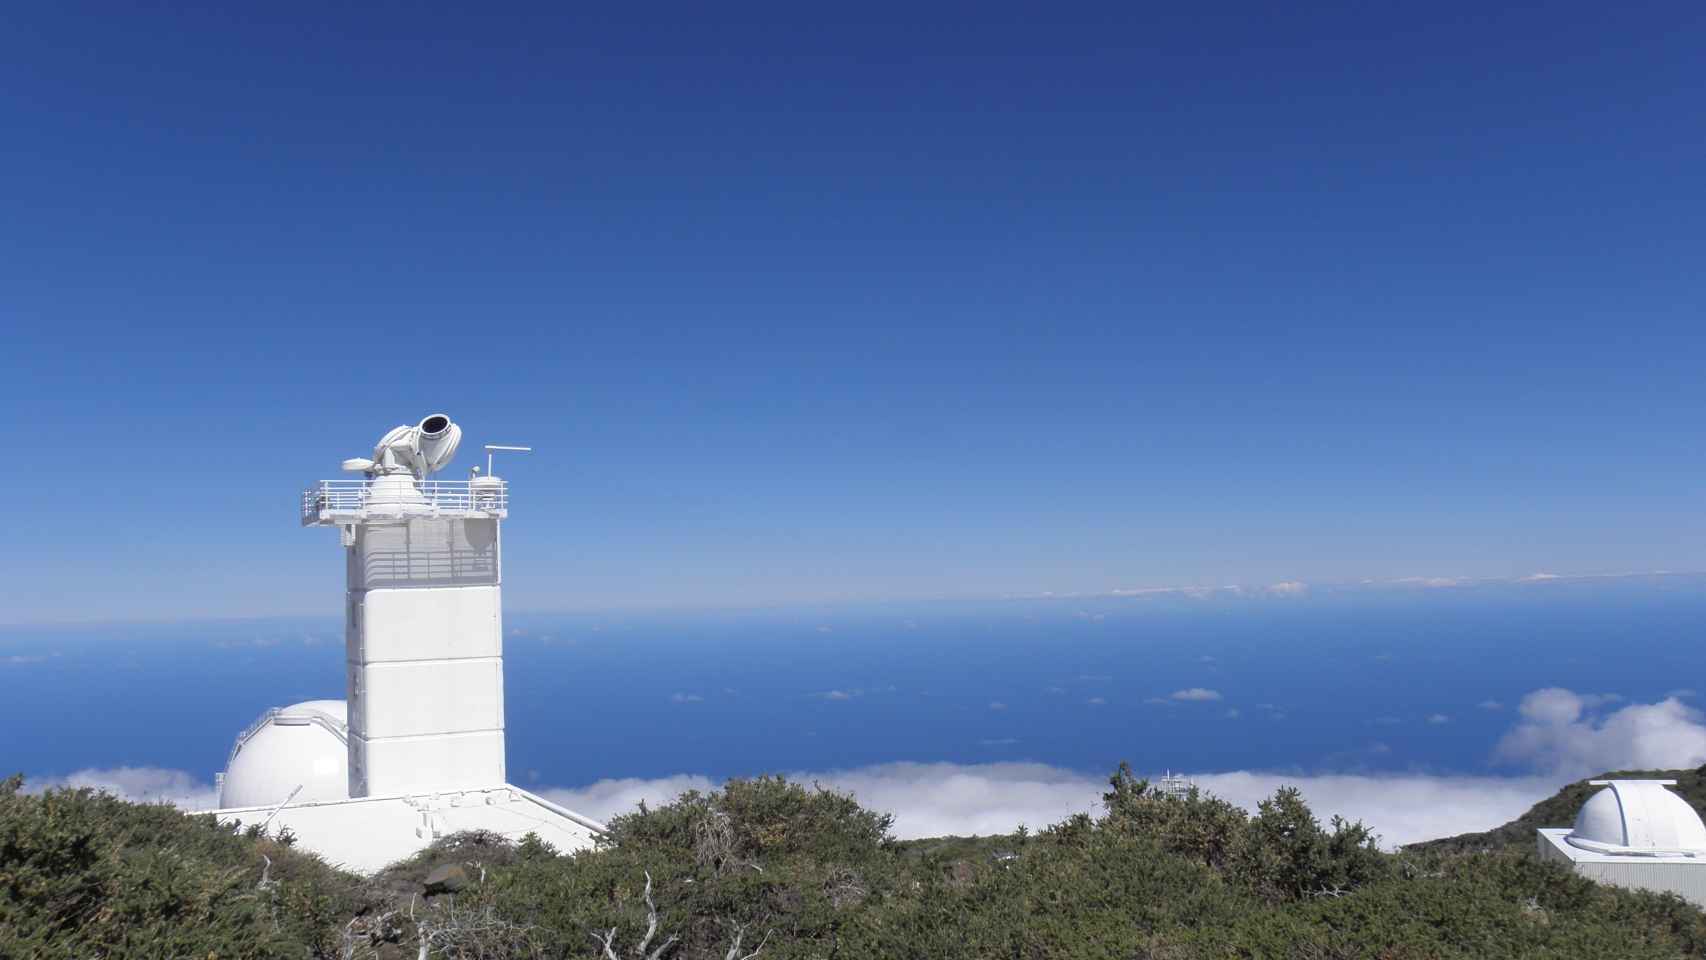 Telescopio Sueco en el observatorio de los Roques de los Muchachos, La Palma